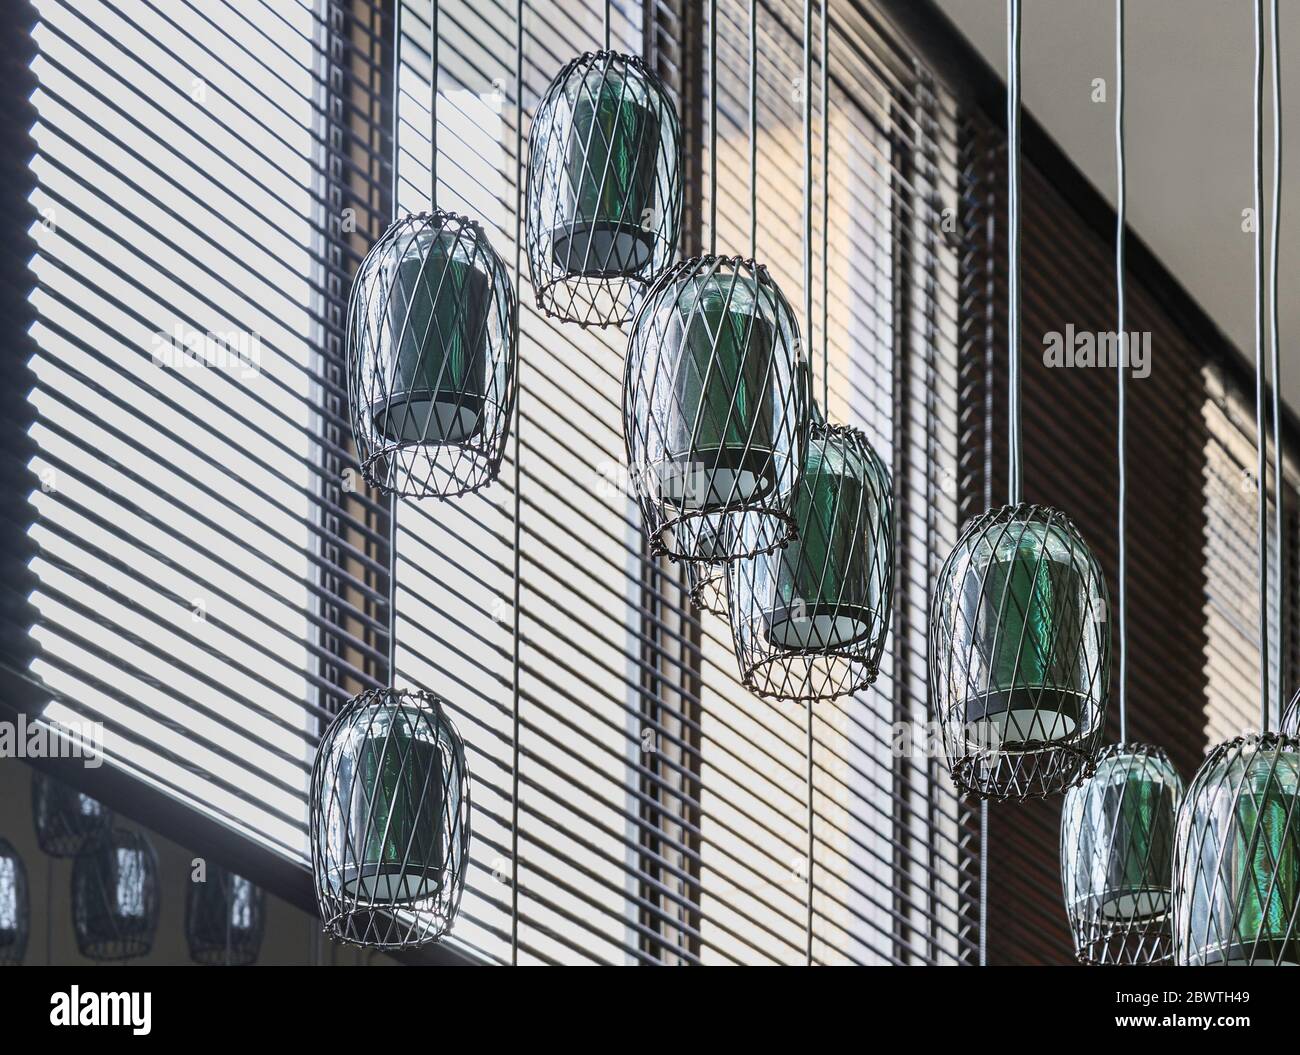 Moderne dekorative grüne predant Lampen in der Nähe von Fenster Nahaufnahme  Stockfotografie - Alamy